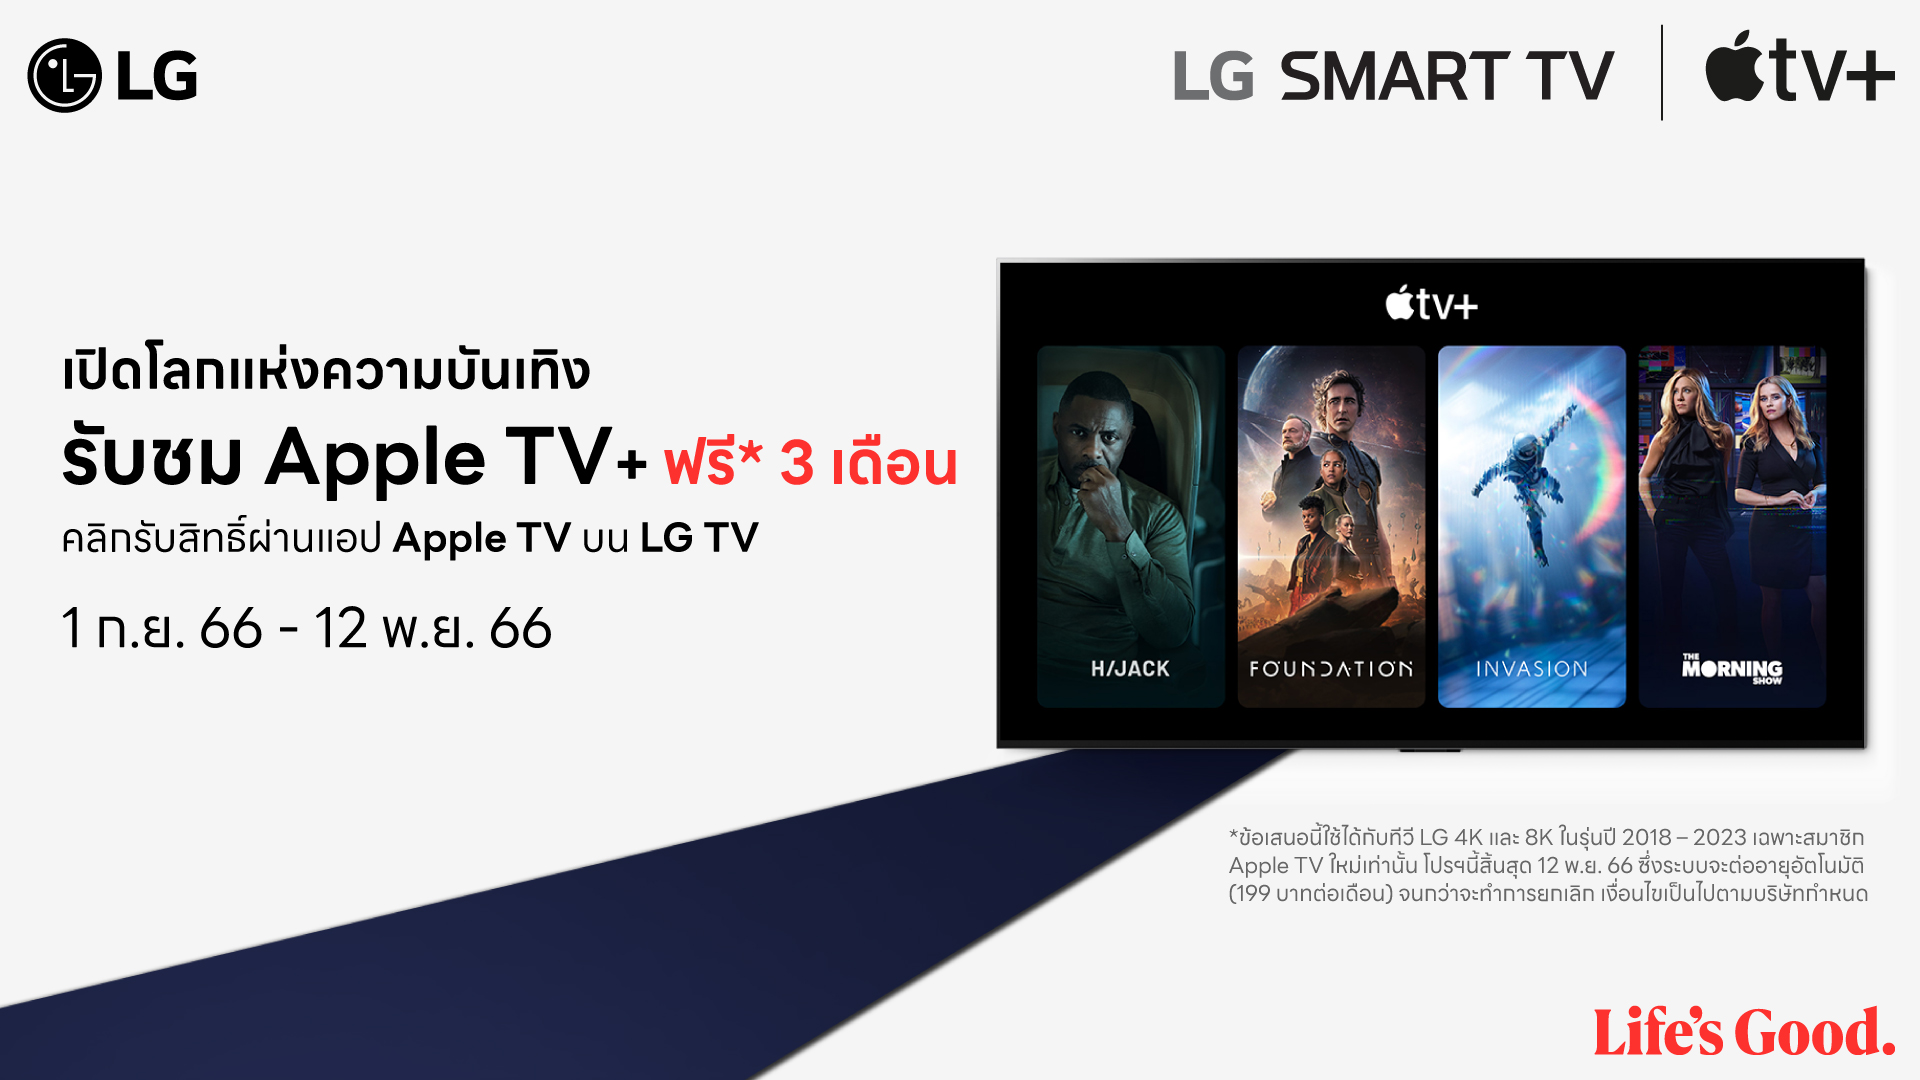 LG มอบข้อเสนอสุดพิเศษให้แก่ผู้ใช้งาน LG Smart TV ด้วยแพ็กเกจรับชม Apple TV+ ฟรี 3 เดือน